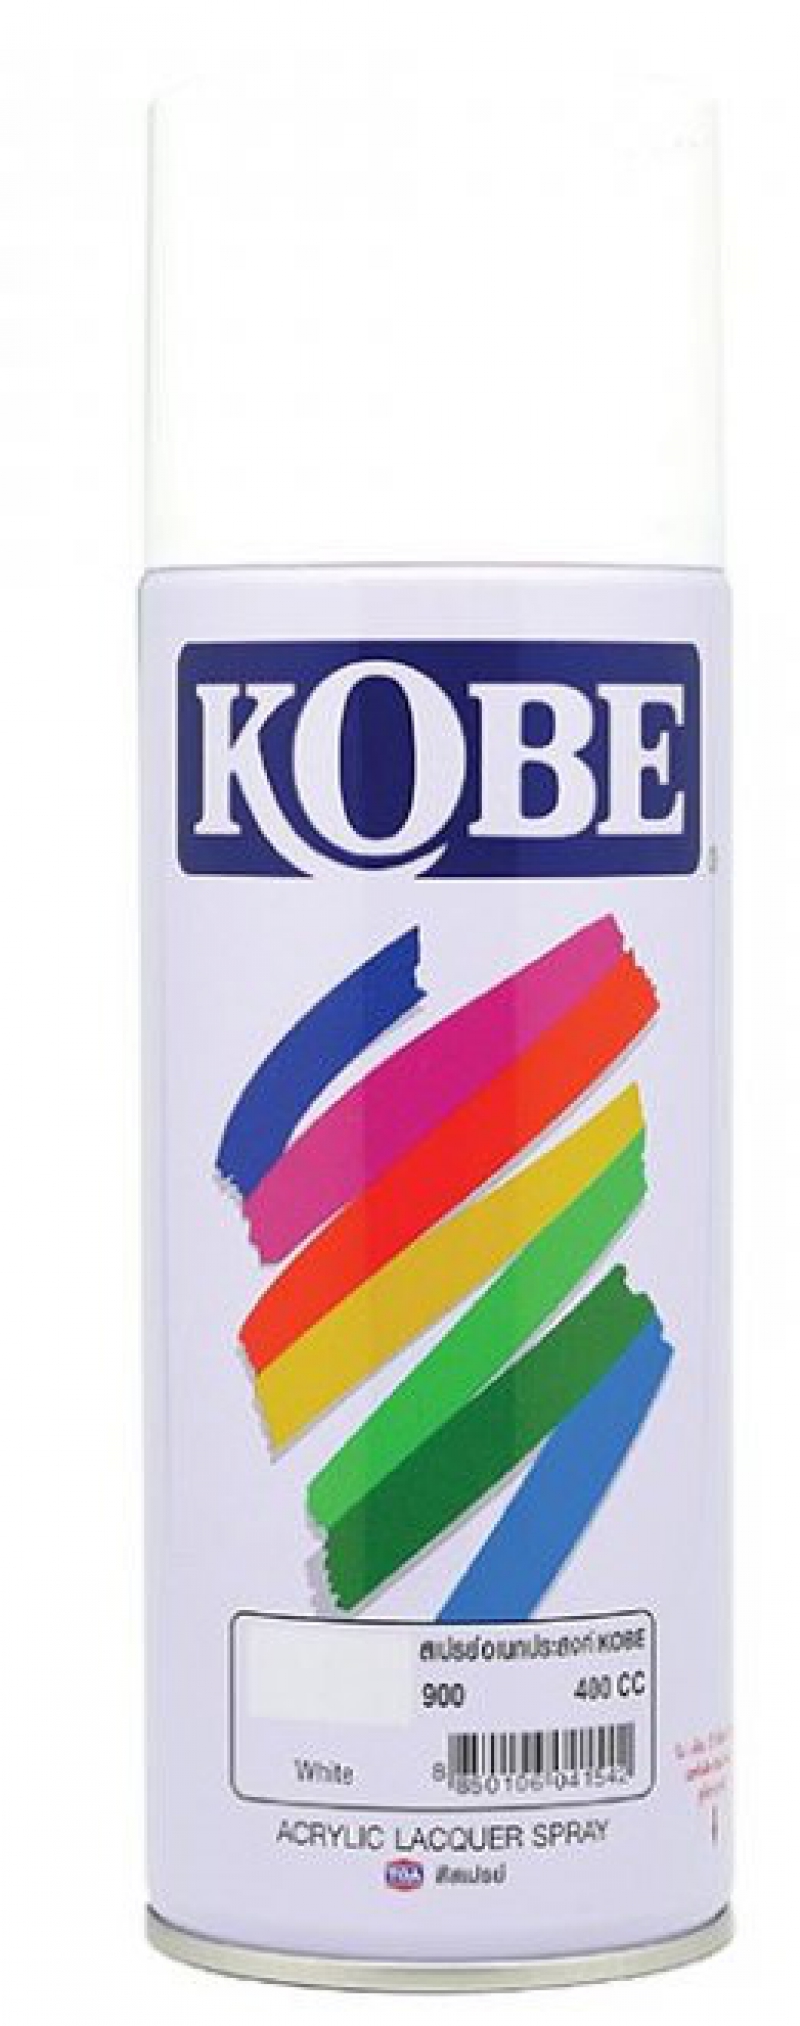 สเปรย์อเนกประสงค์ KOBE No. 900 สีขาว